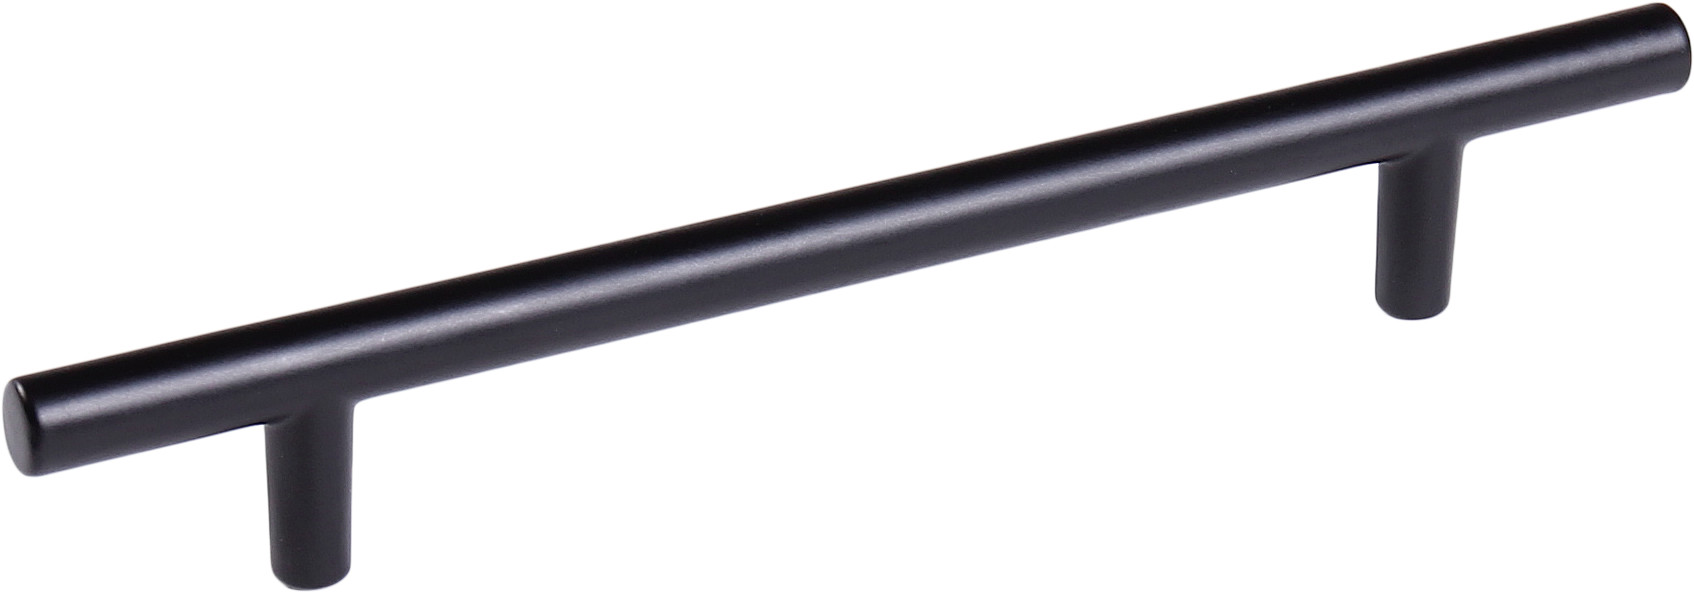 Ручка рейлинг длинная для шкафа 1000 мм